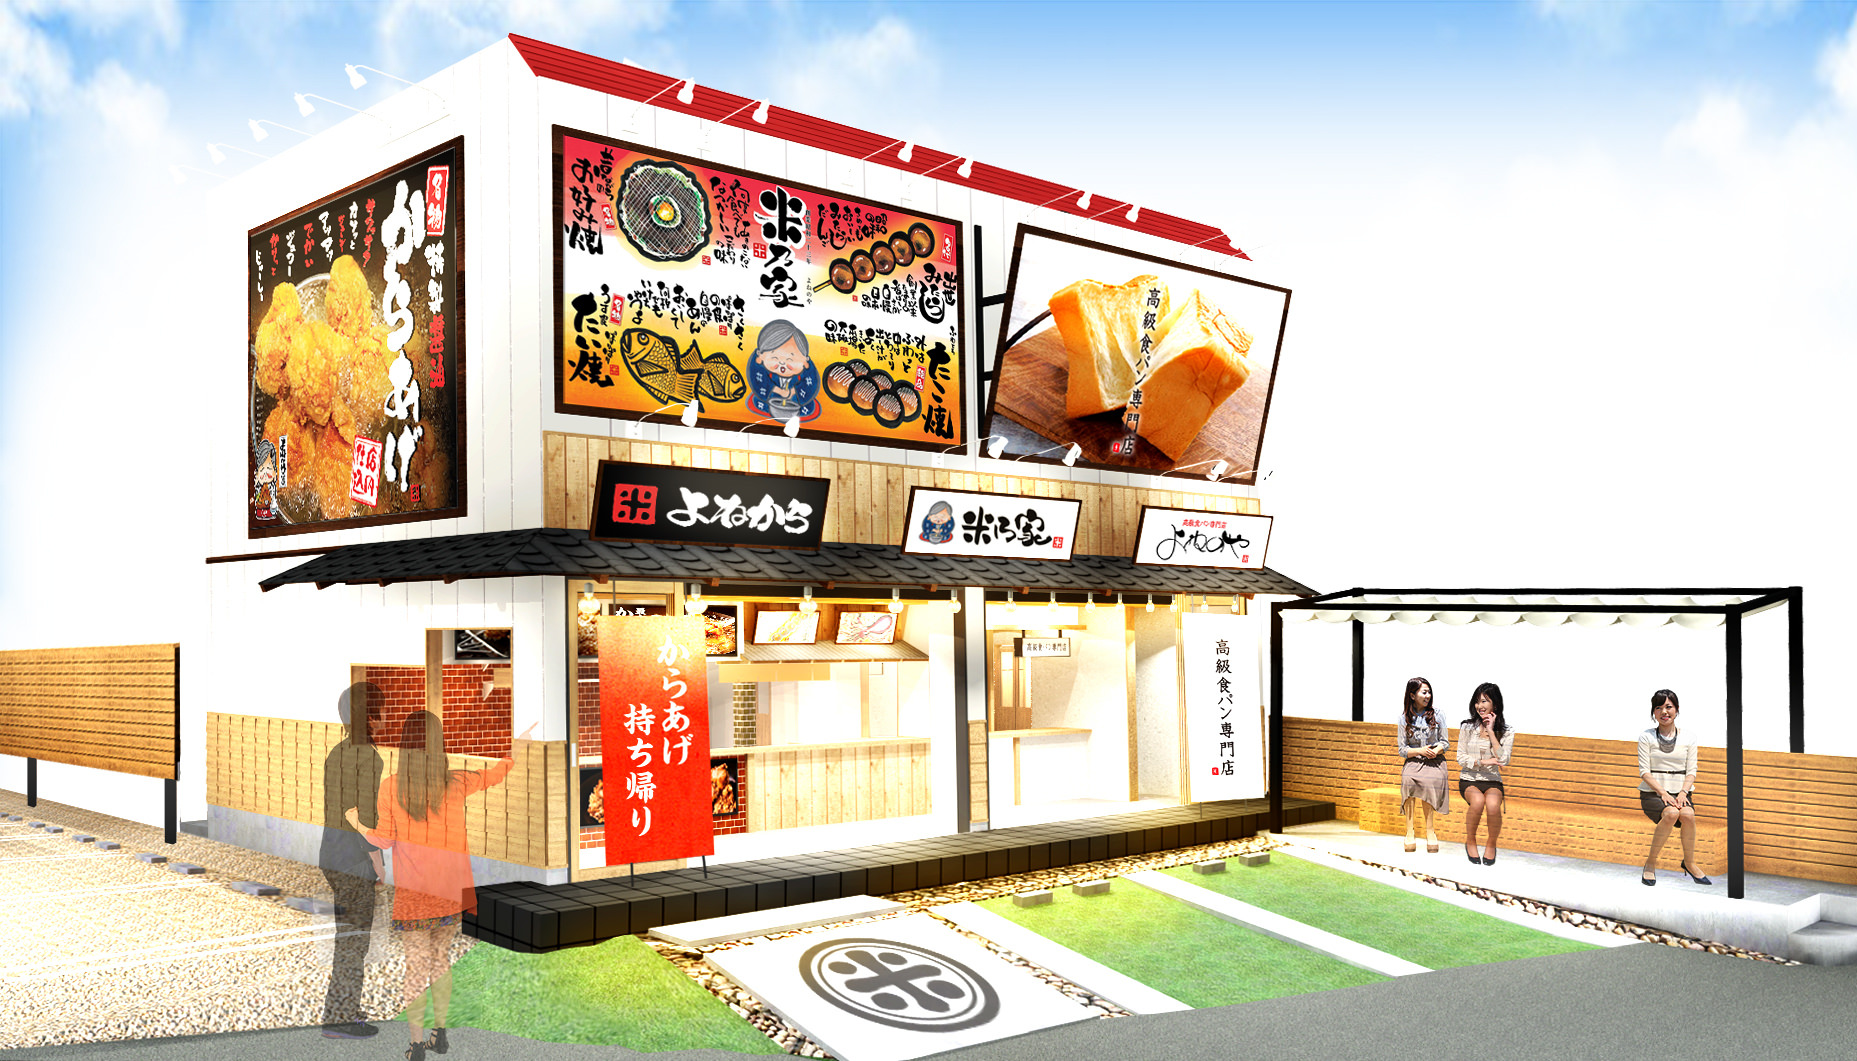 米乃家のテイクアウト複合専門店が愛知県一宮市千秋町に
8月20日グランドオープン、8月22日までお得なイベントも開催